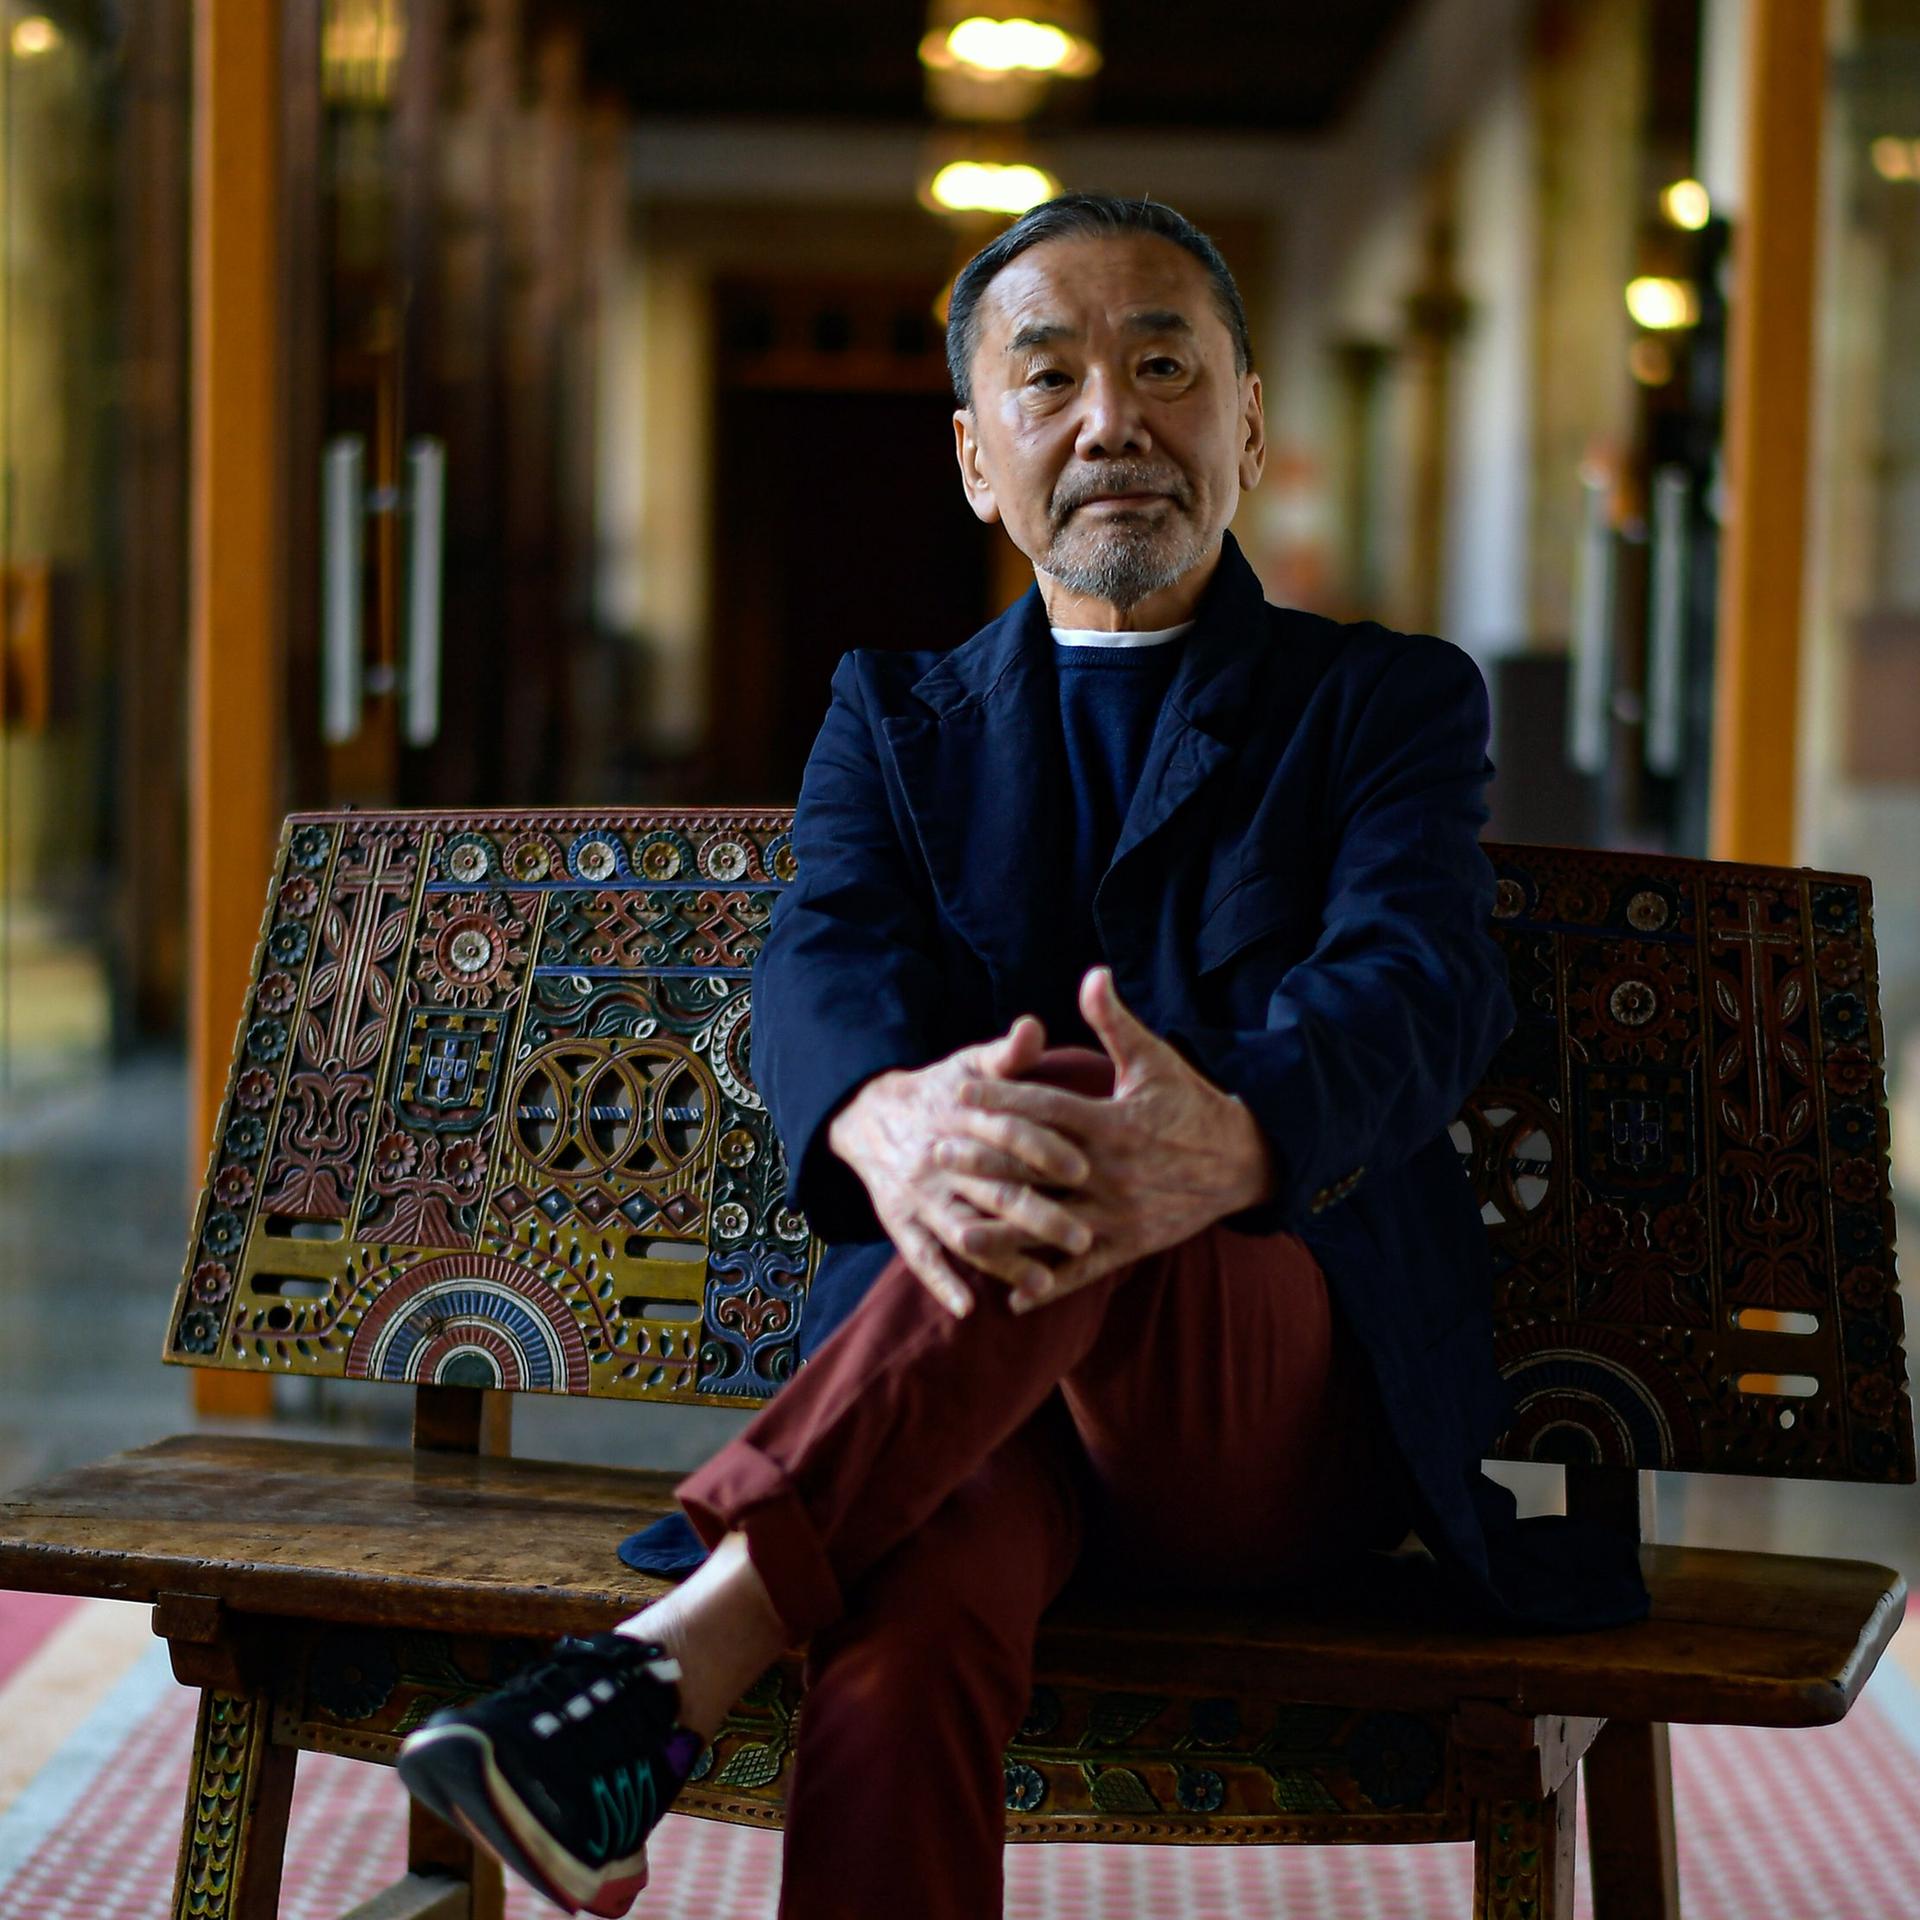 Neuer Roman von Murakami – Von Weltflucht, Spiegelungen und Rätselräumen